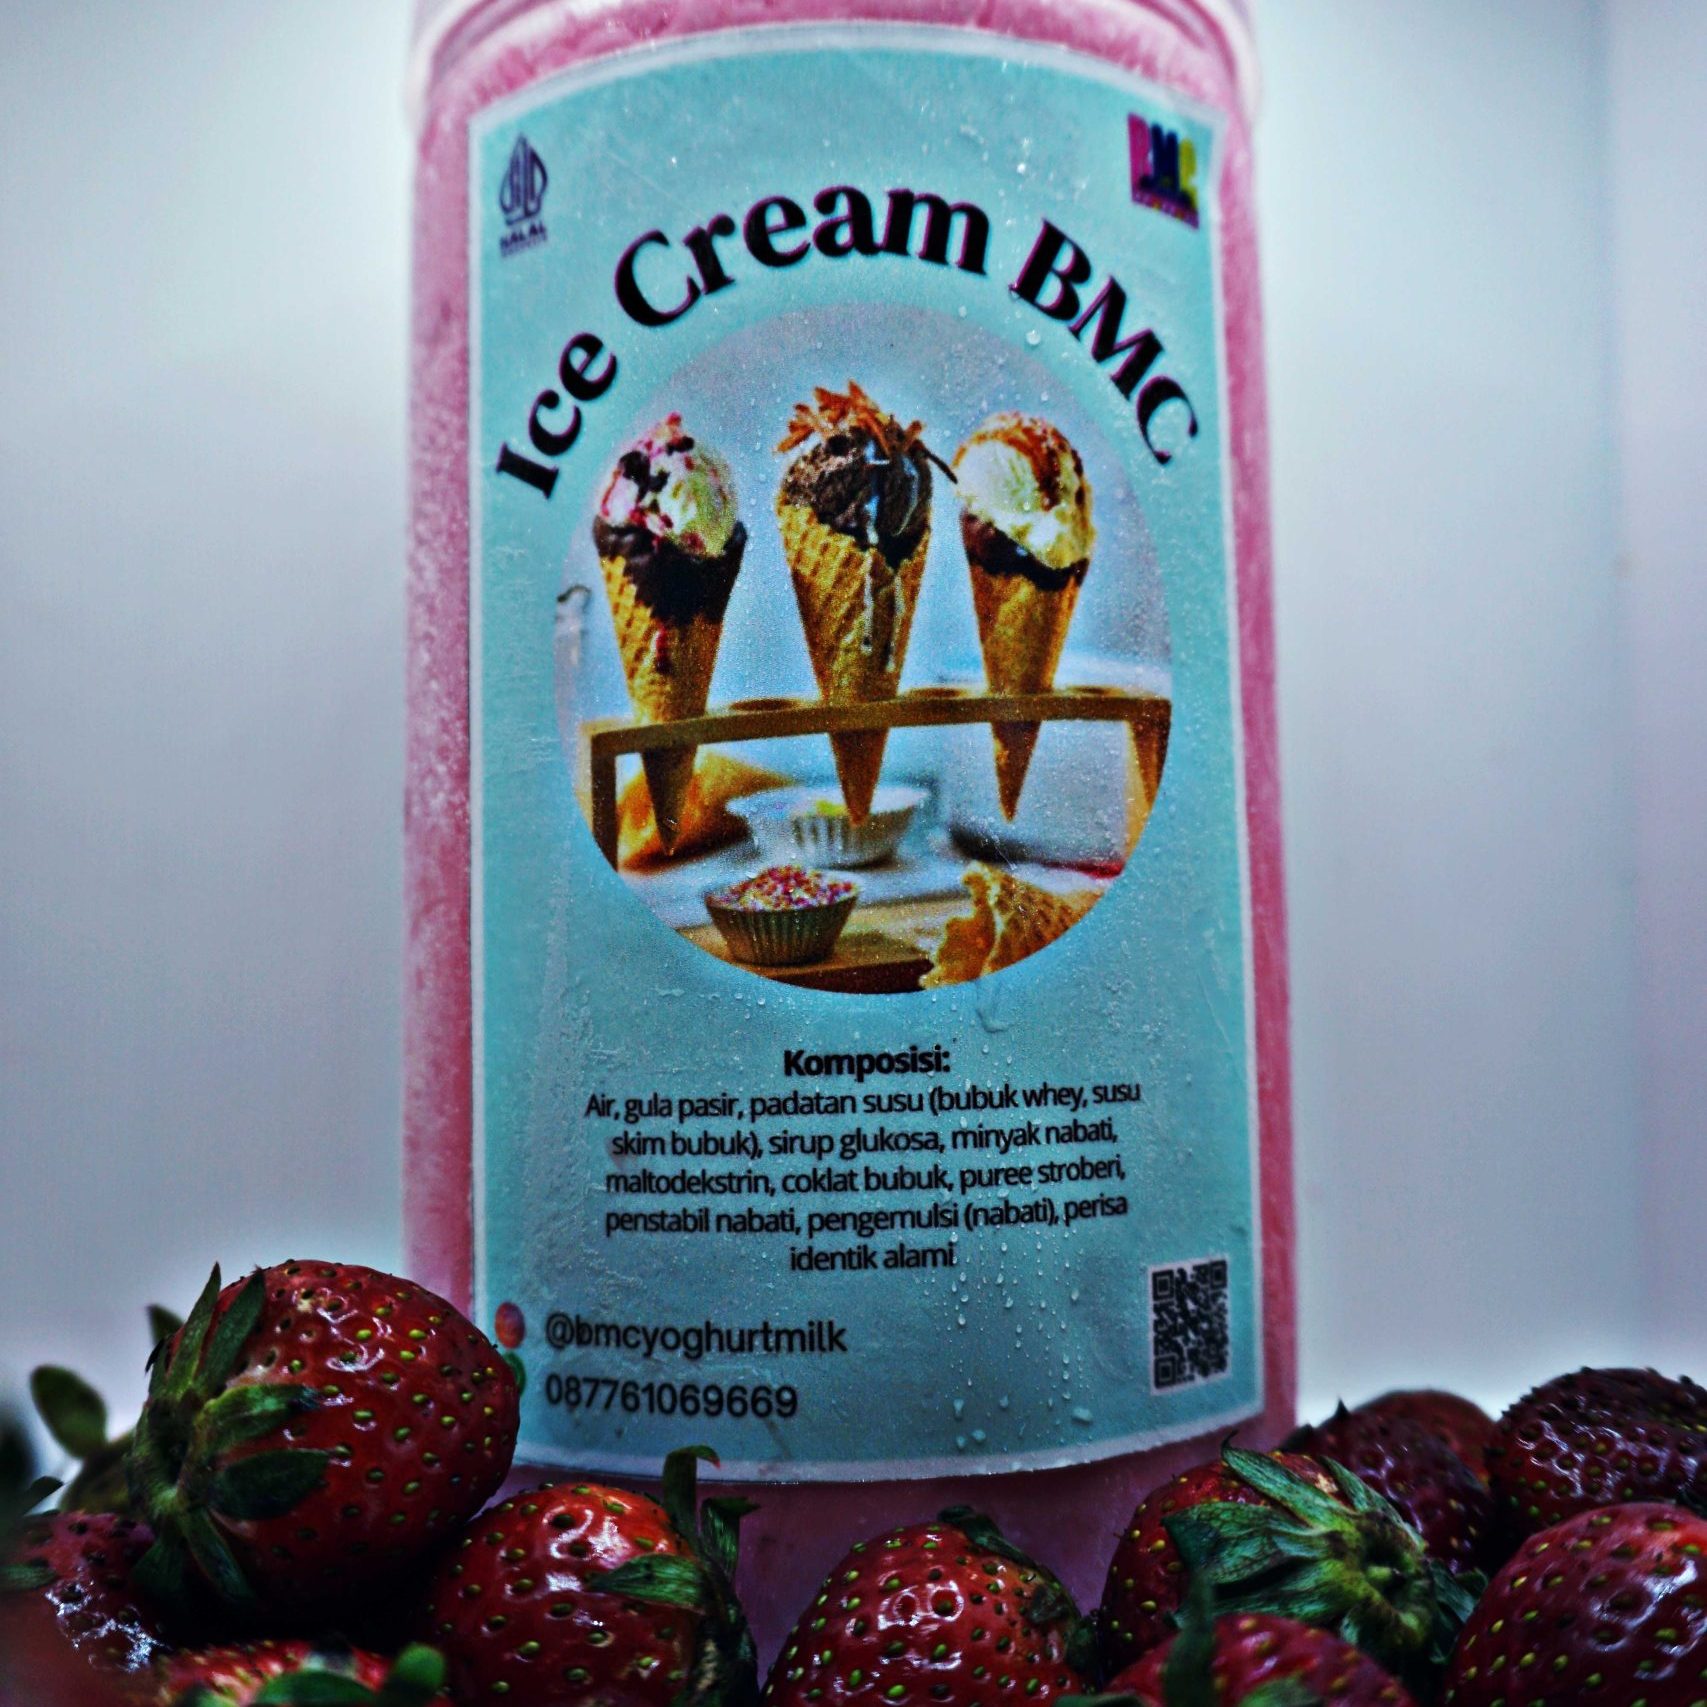 09. Ice Cream Strawberry